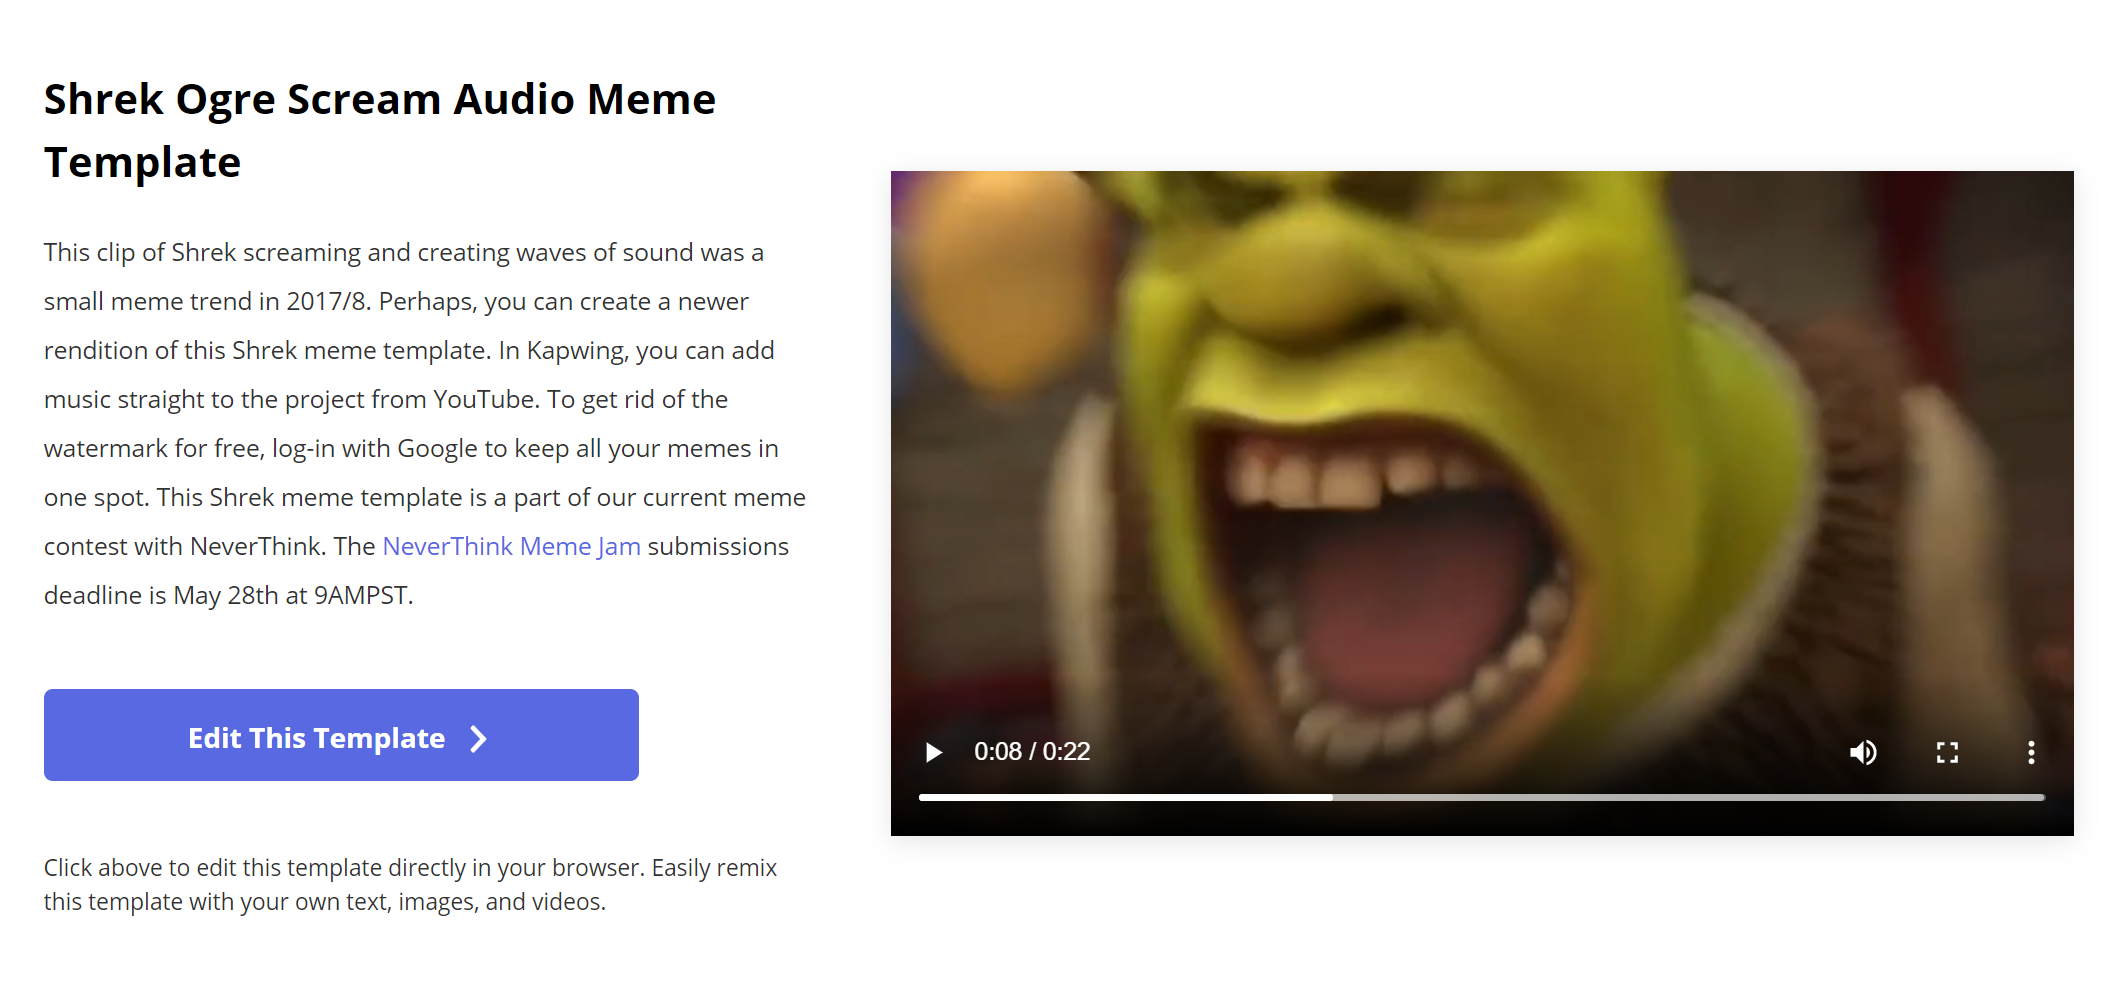 Audio meme template for Shrek Meme Jam